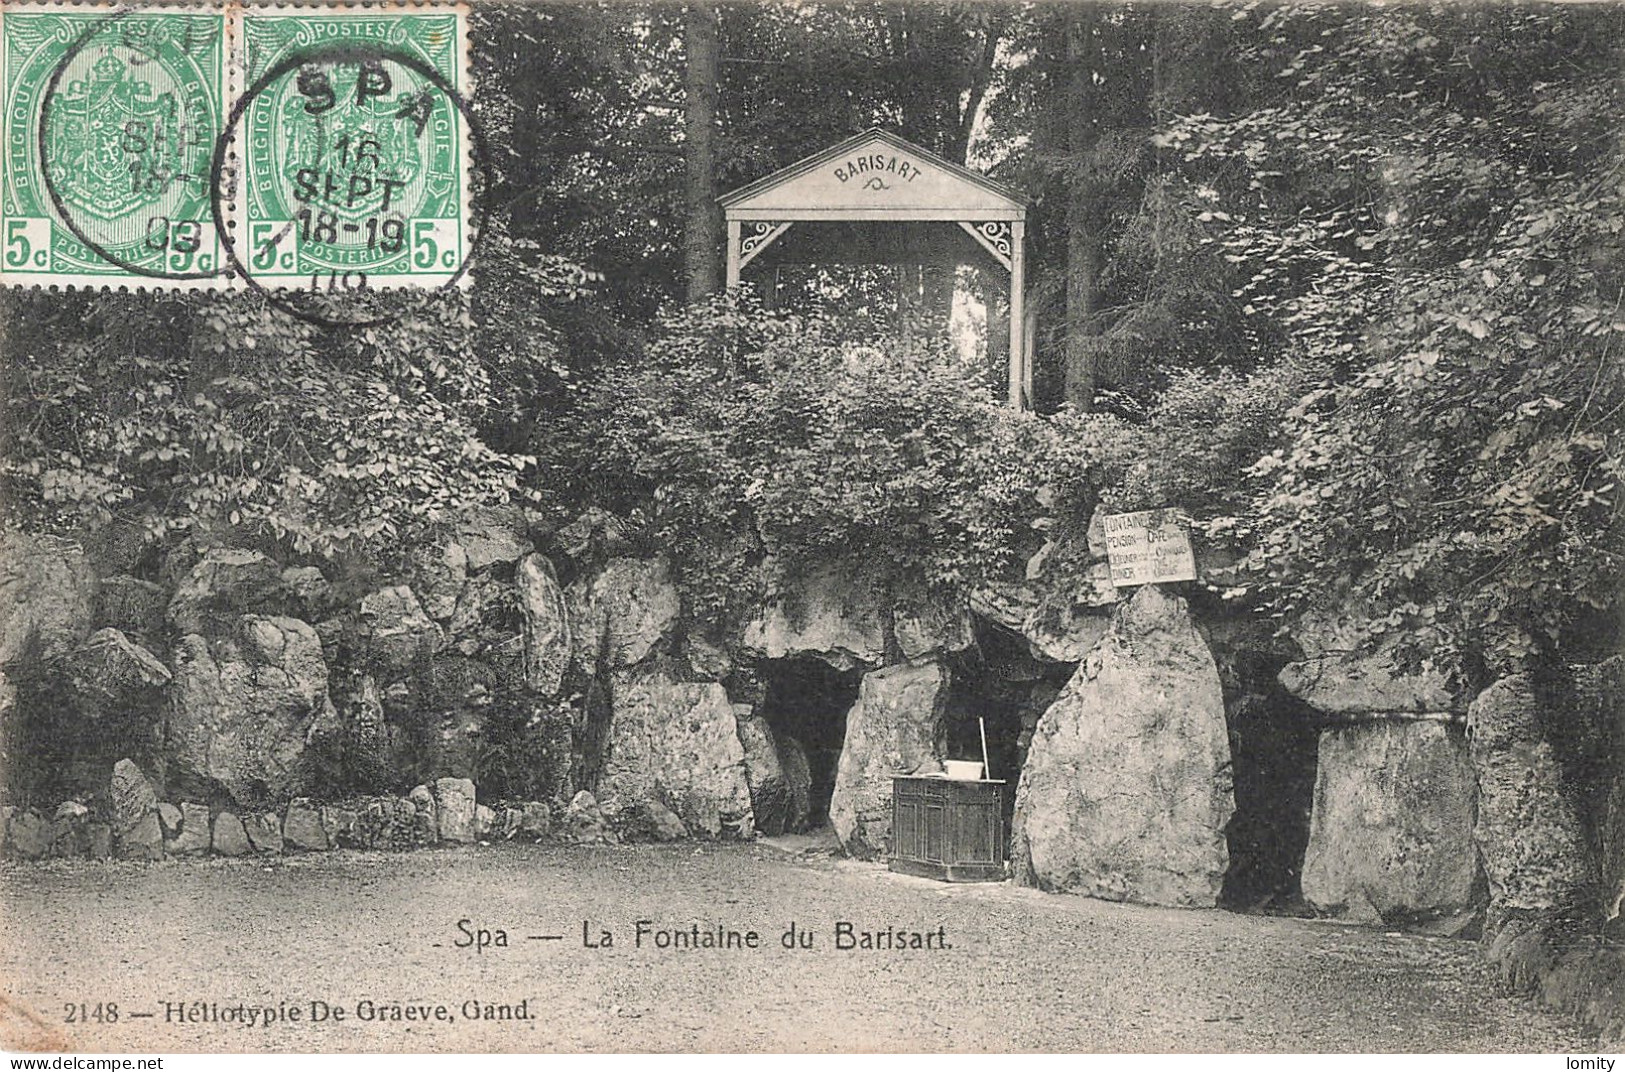 déstockage lot 5 cartes postales Belgique CPA panorama lac Warfaz Kursaal fontaine du Barisart